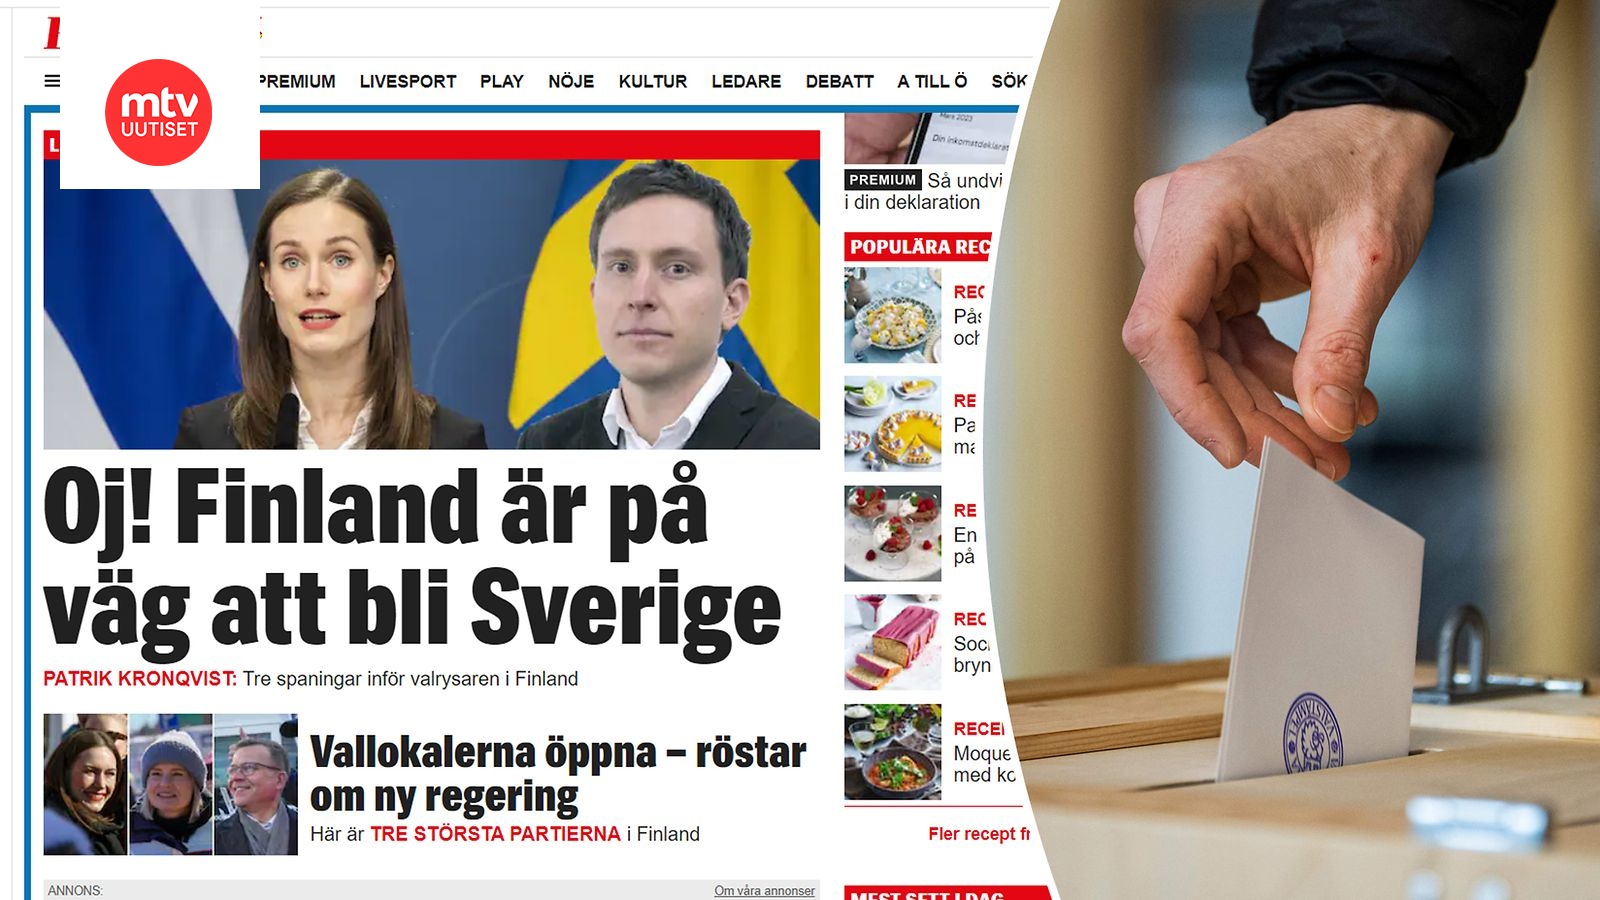 Expressen: Suomesta on tulossa Ruotsi – kolme politiikan ilmiötä jo totta  länsinaapurissa 